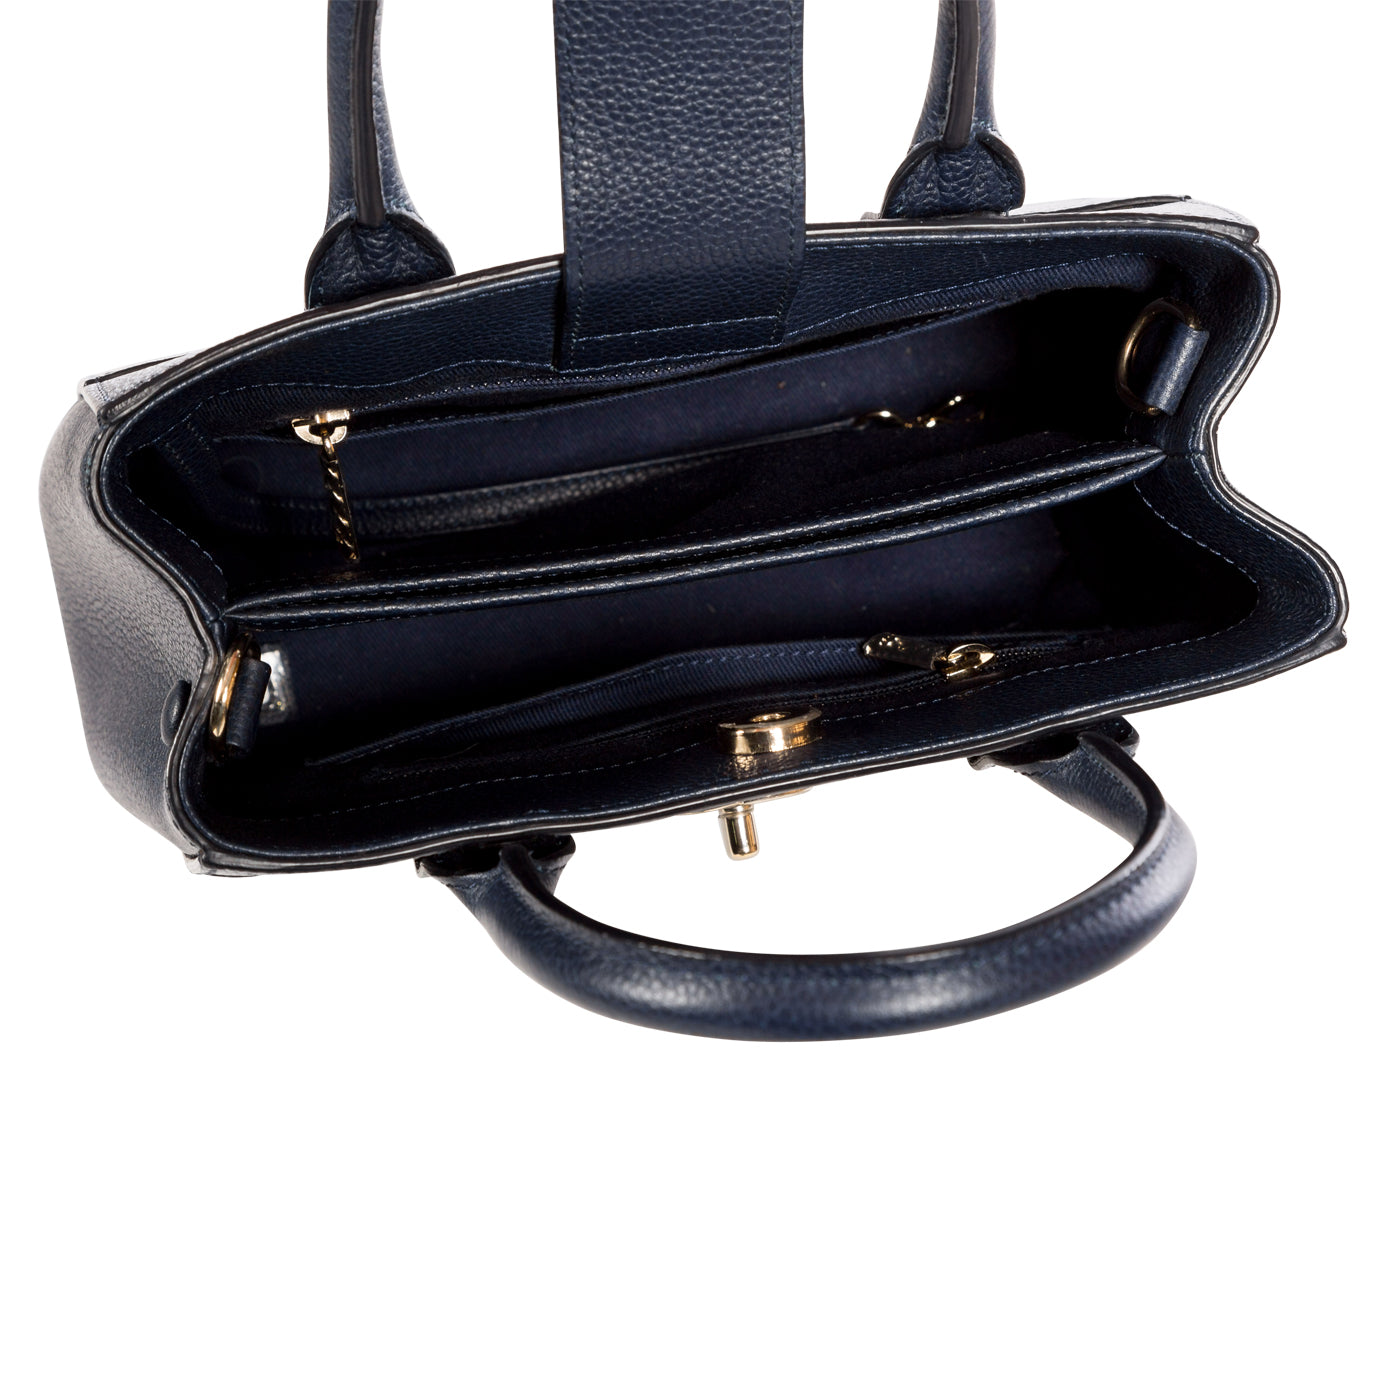 Chanel - Neo Executive Mini Shopping Bag - Navy